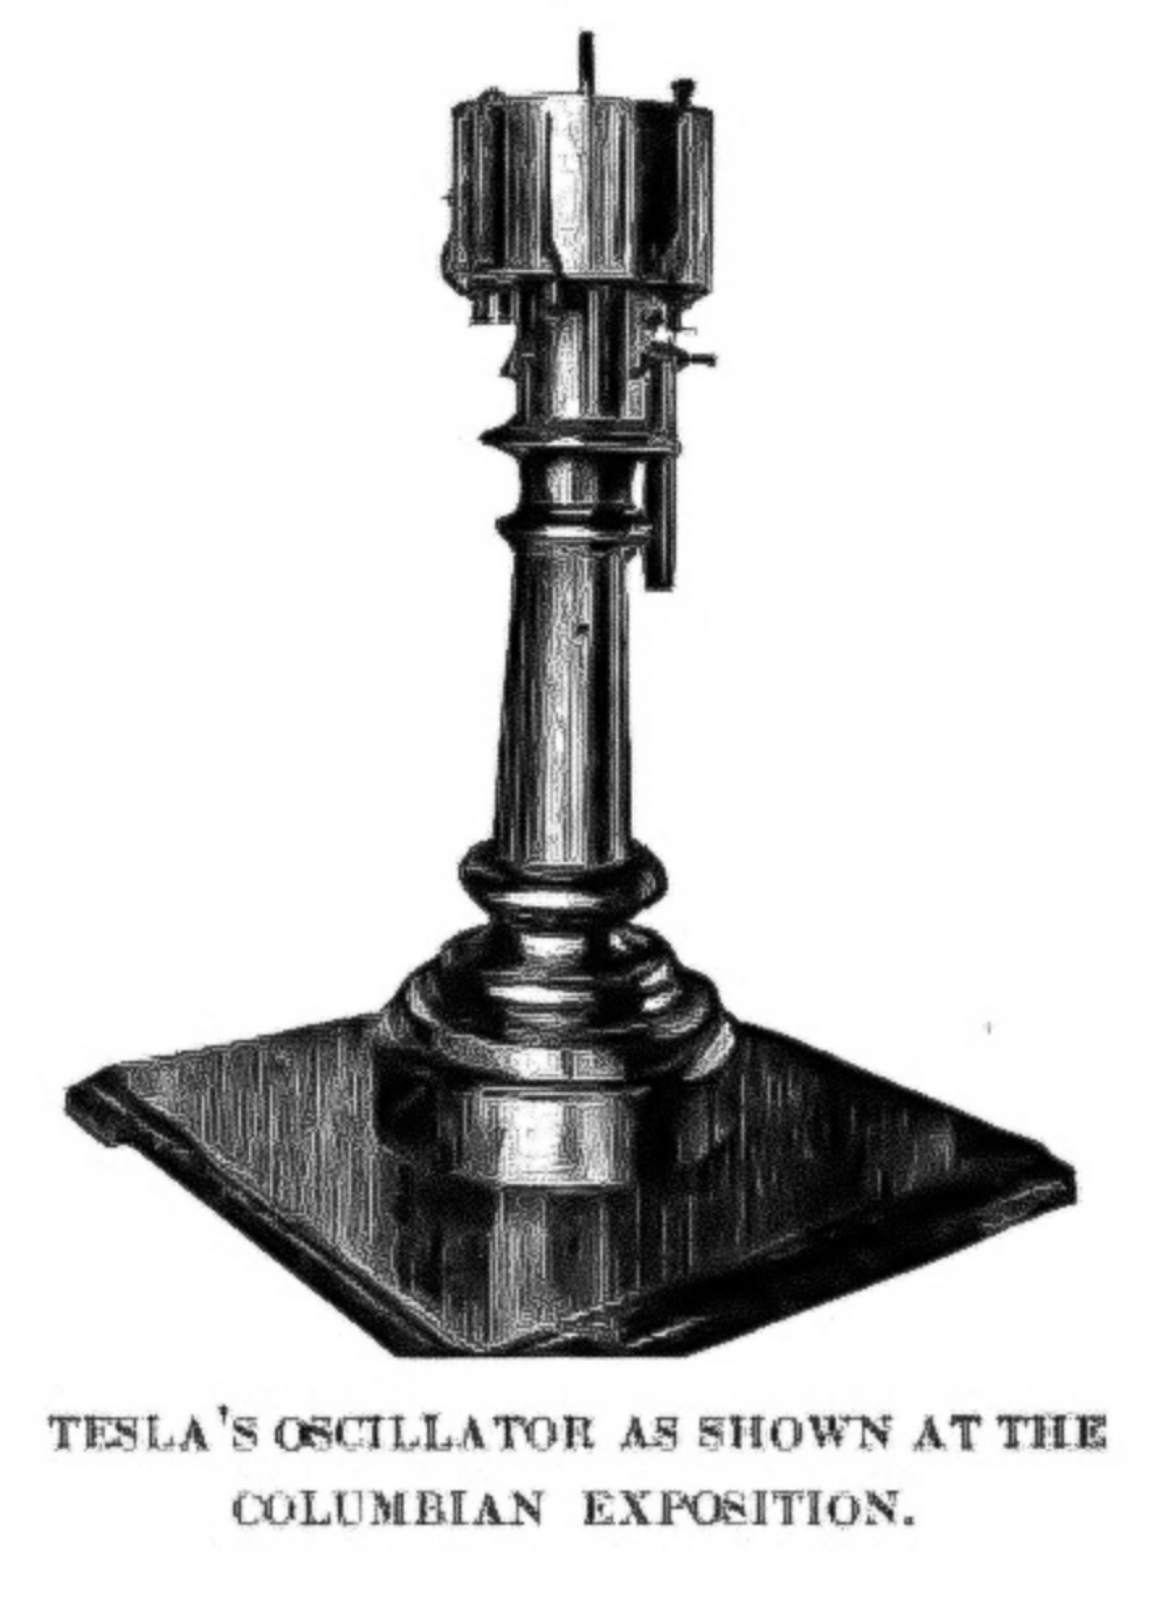 特斯拉的機電振盪器，蒸汽動力發電機，尼古拉·特斯拉於 1893 年獲得專利。